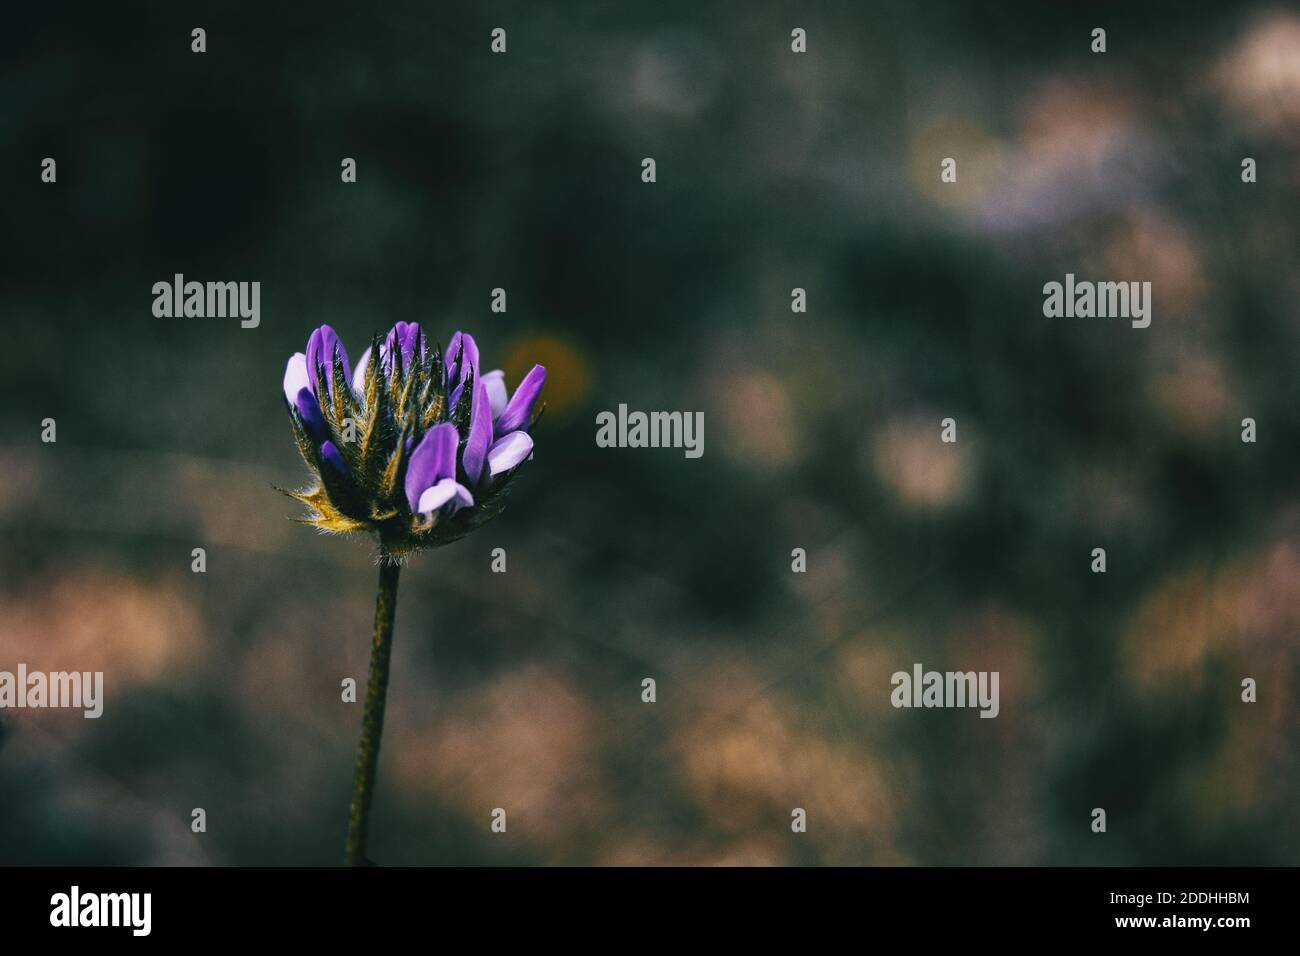 Detalle de una flor morada aislada de bituminaria bituminosa sobre un fondo neutro Foto de stock